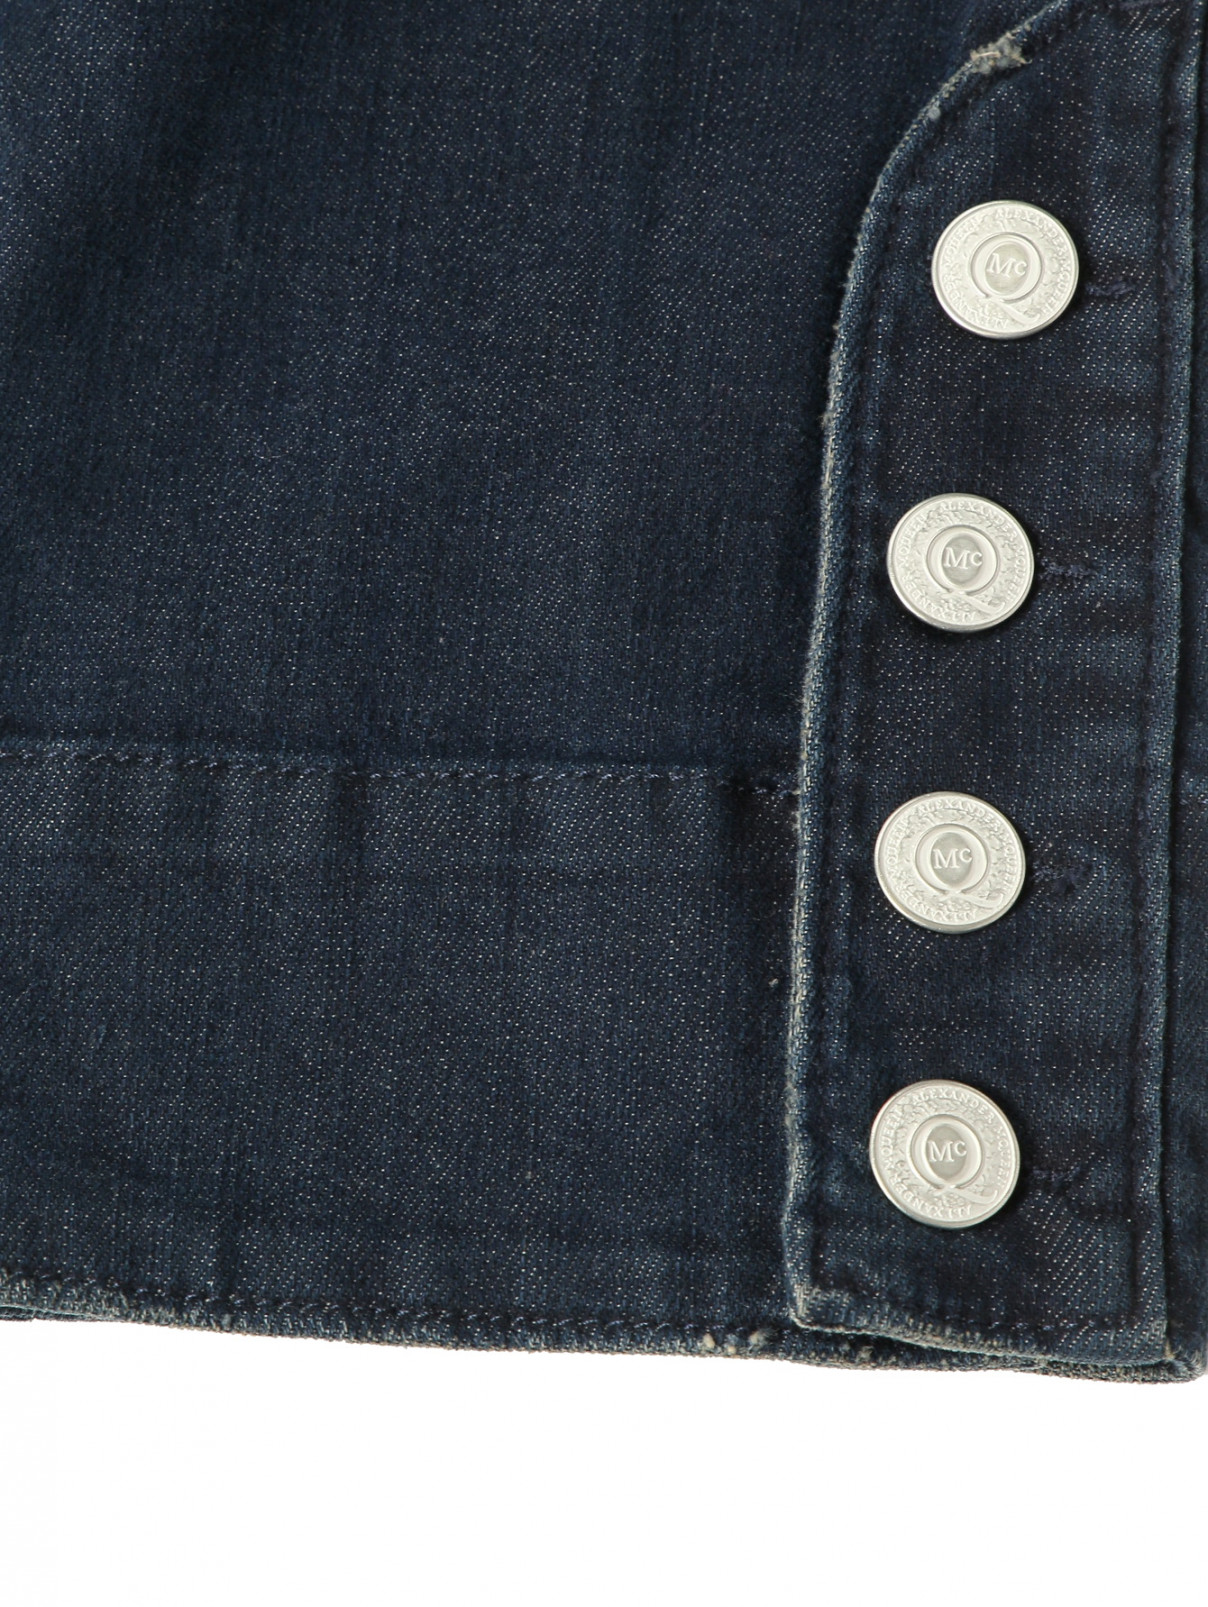 Укороченные джинсы с накладными карманами MC Alexander McQueen  –  Деталь2  – Цвет:  Синий